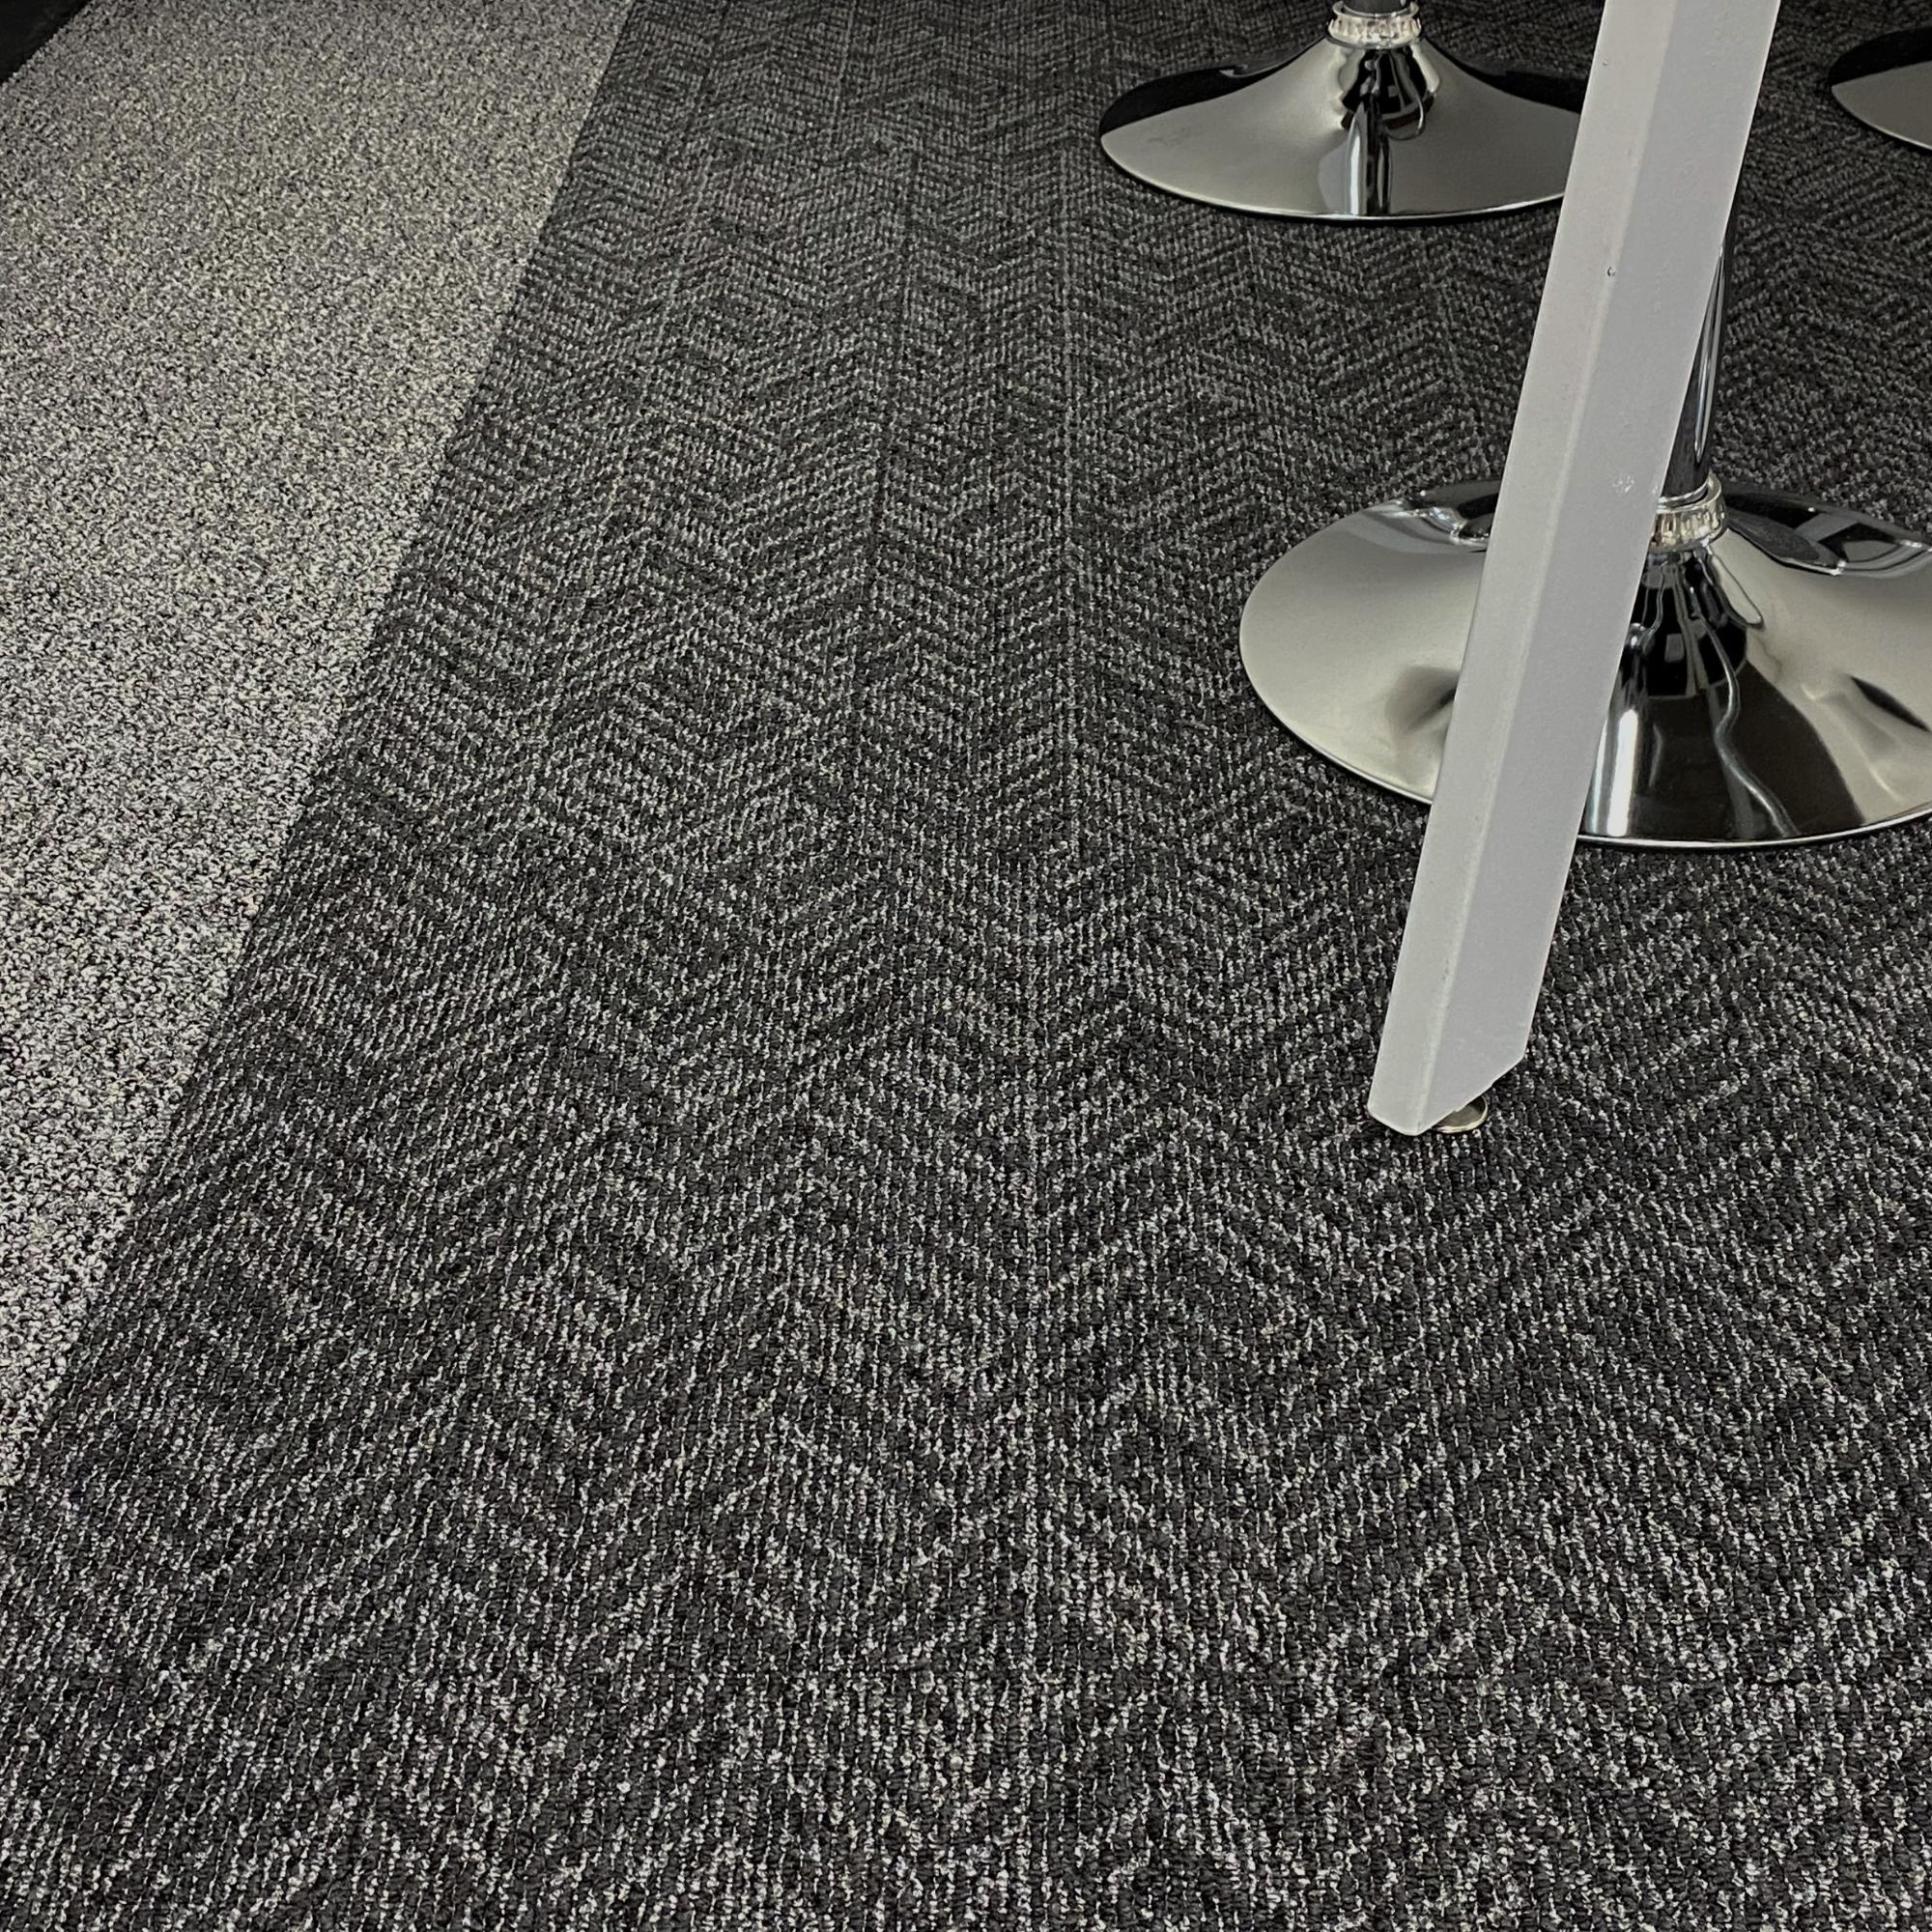 kachi-Carpet-Tile-Flooring-Black-Grey-2